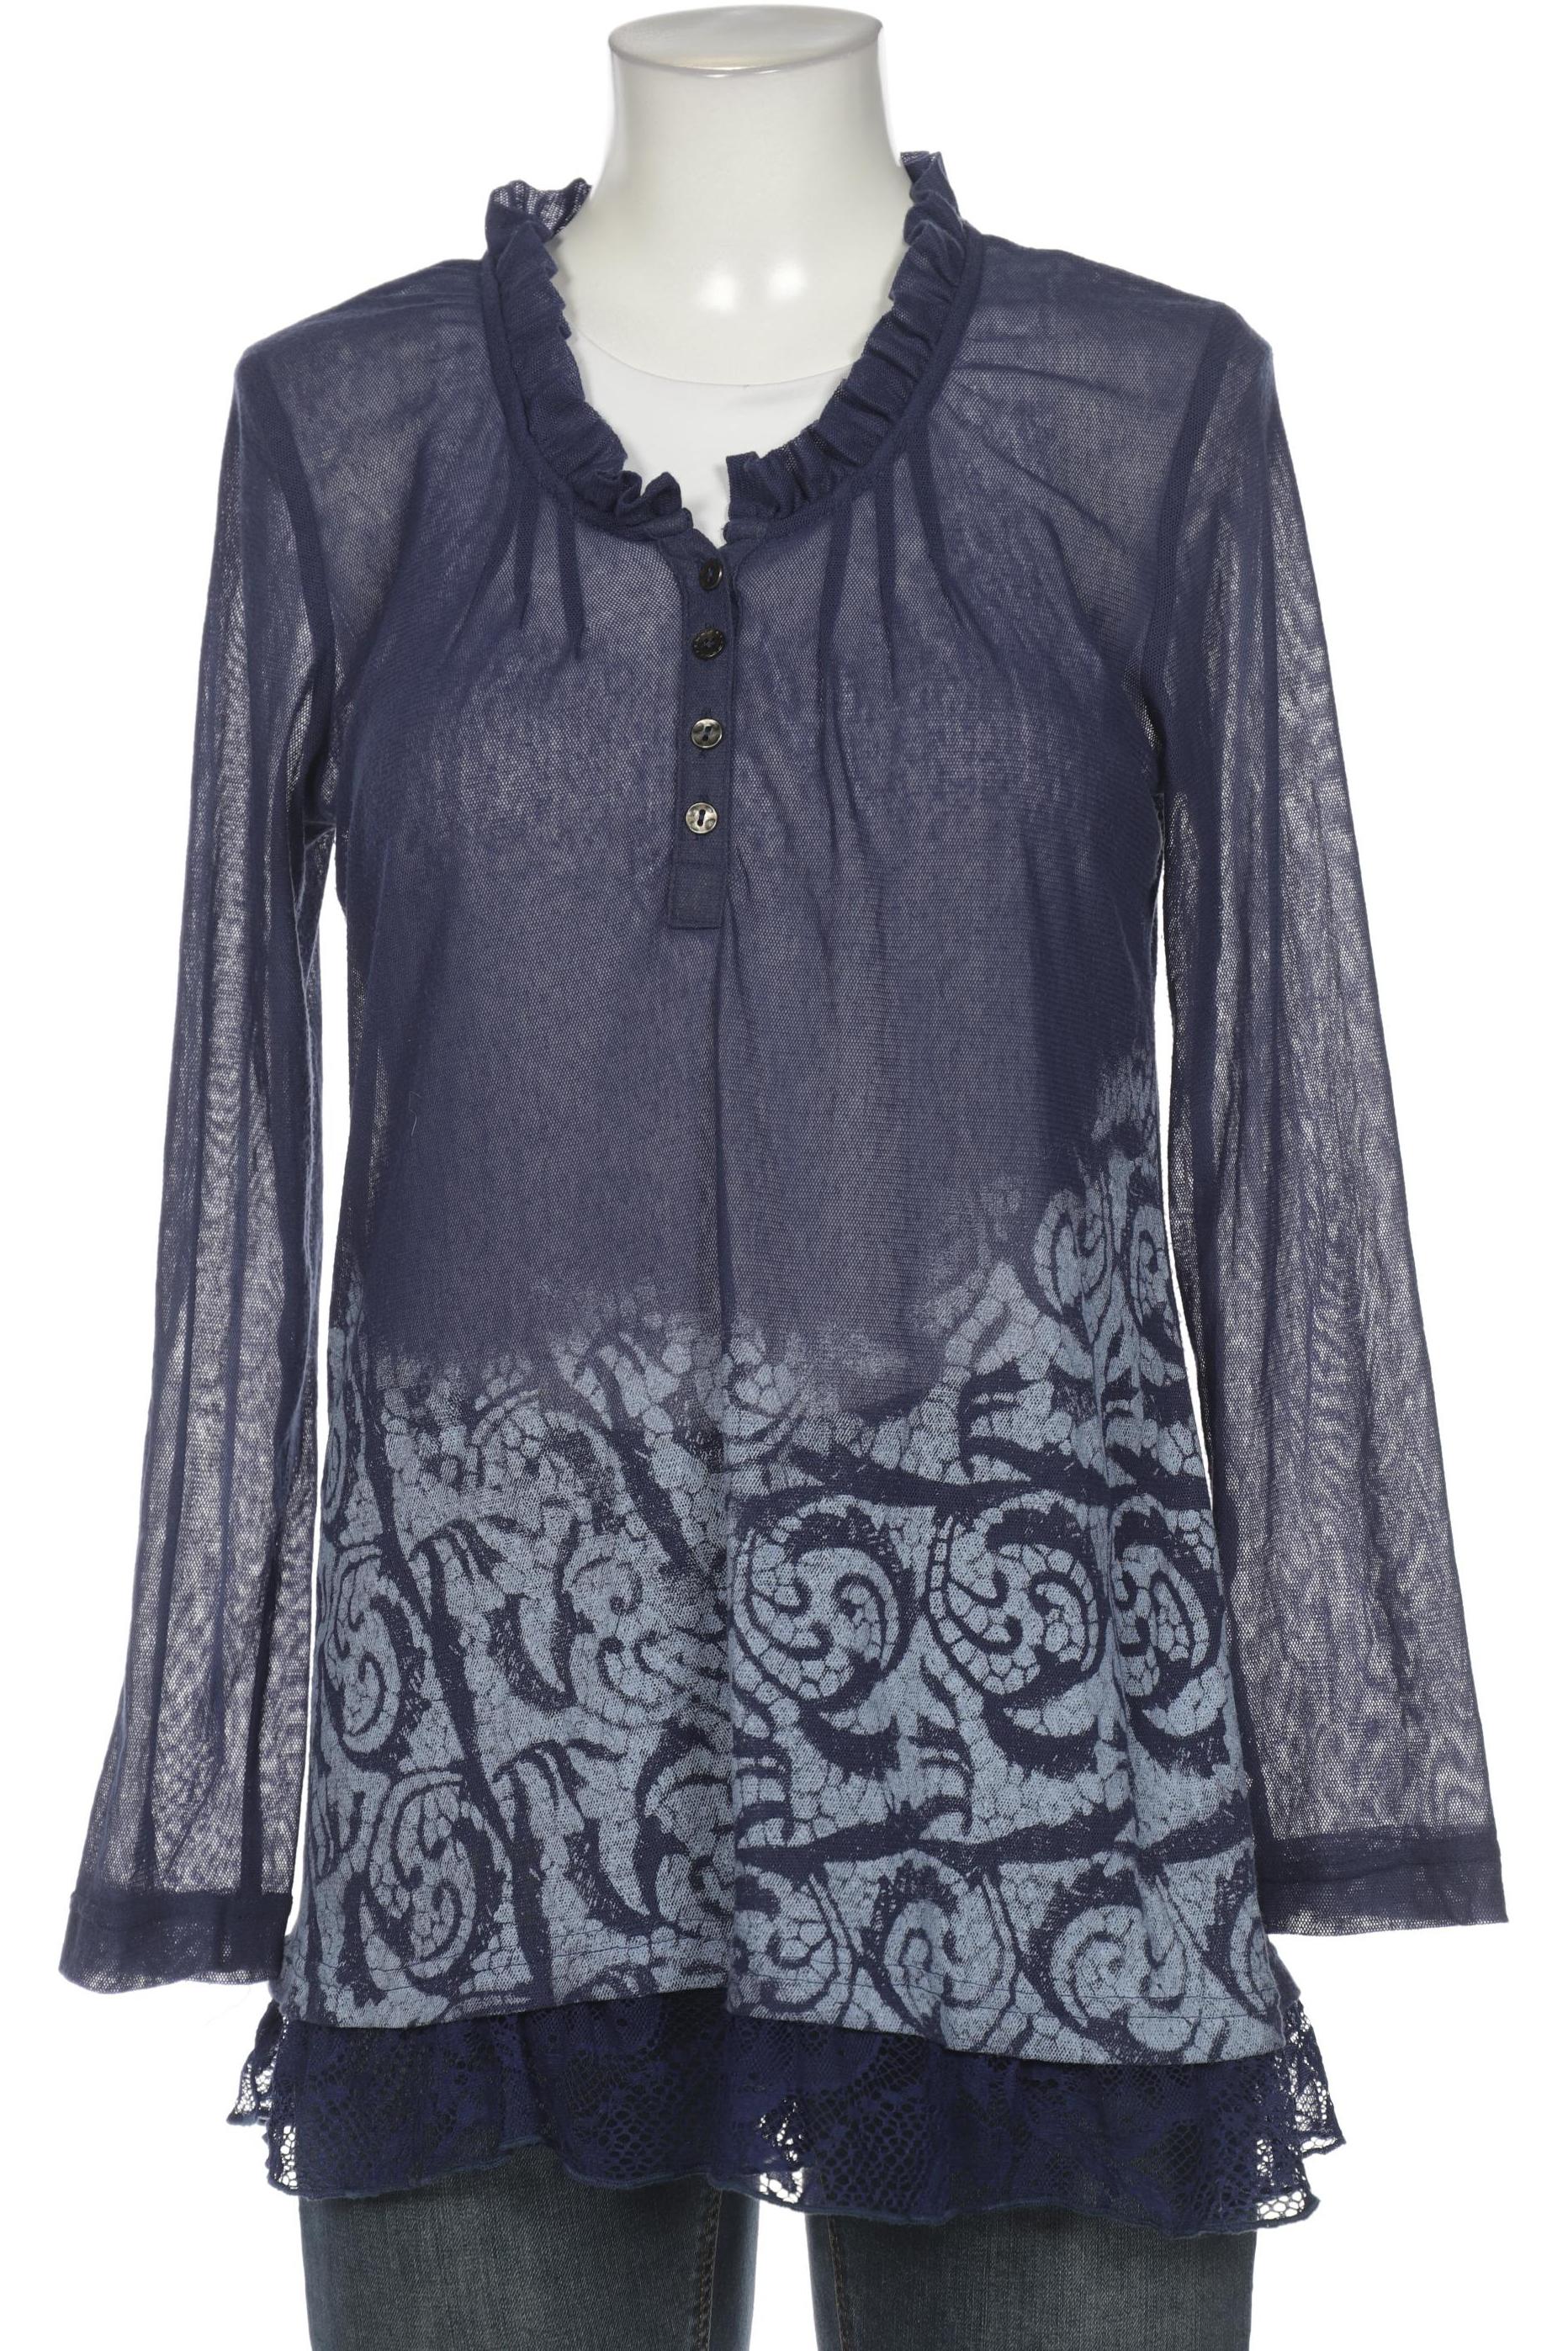 BiBA Damen Langarmshirt, marineblau, Gr. 38 von BiBA